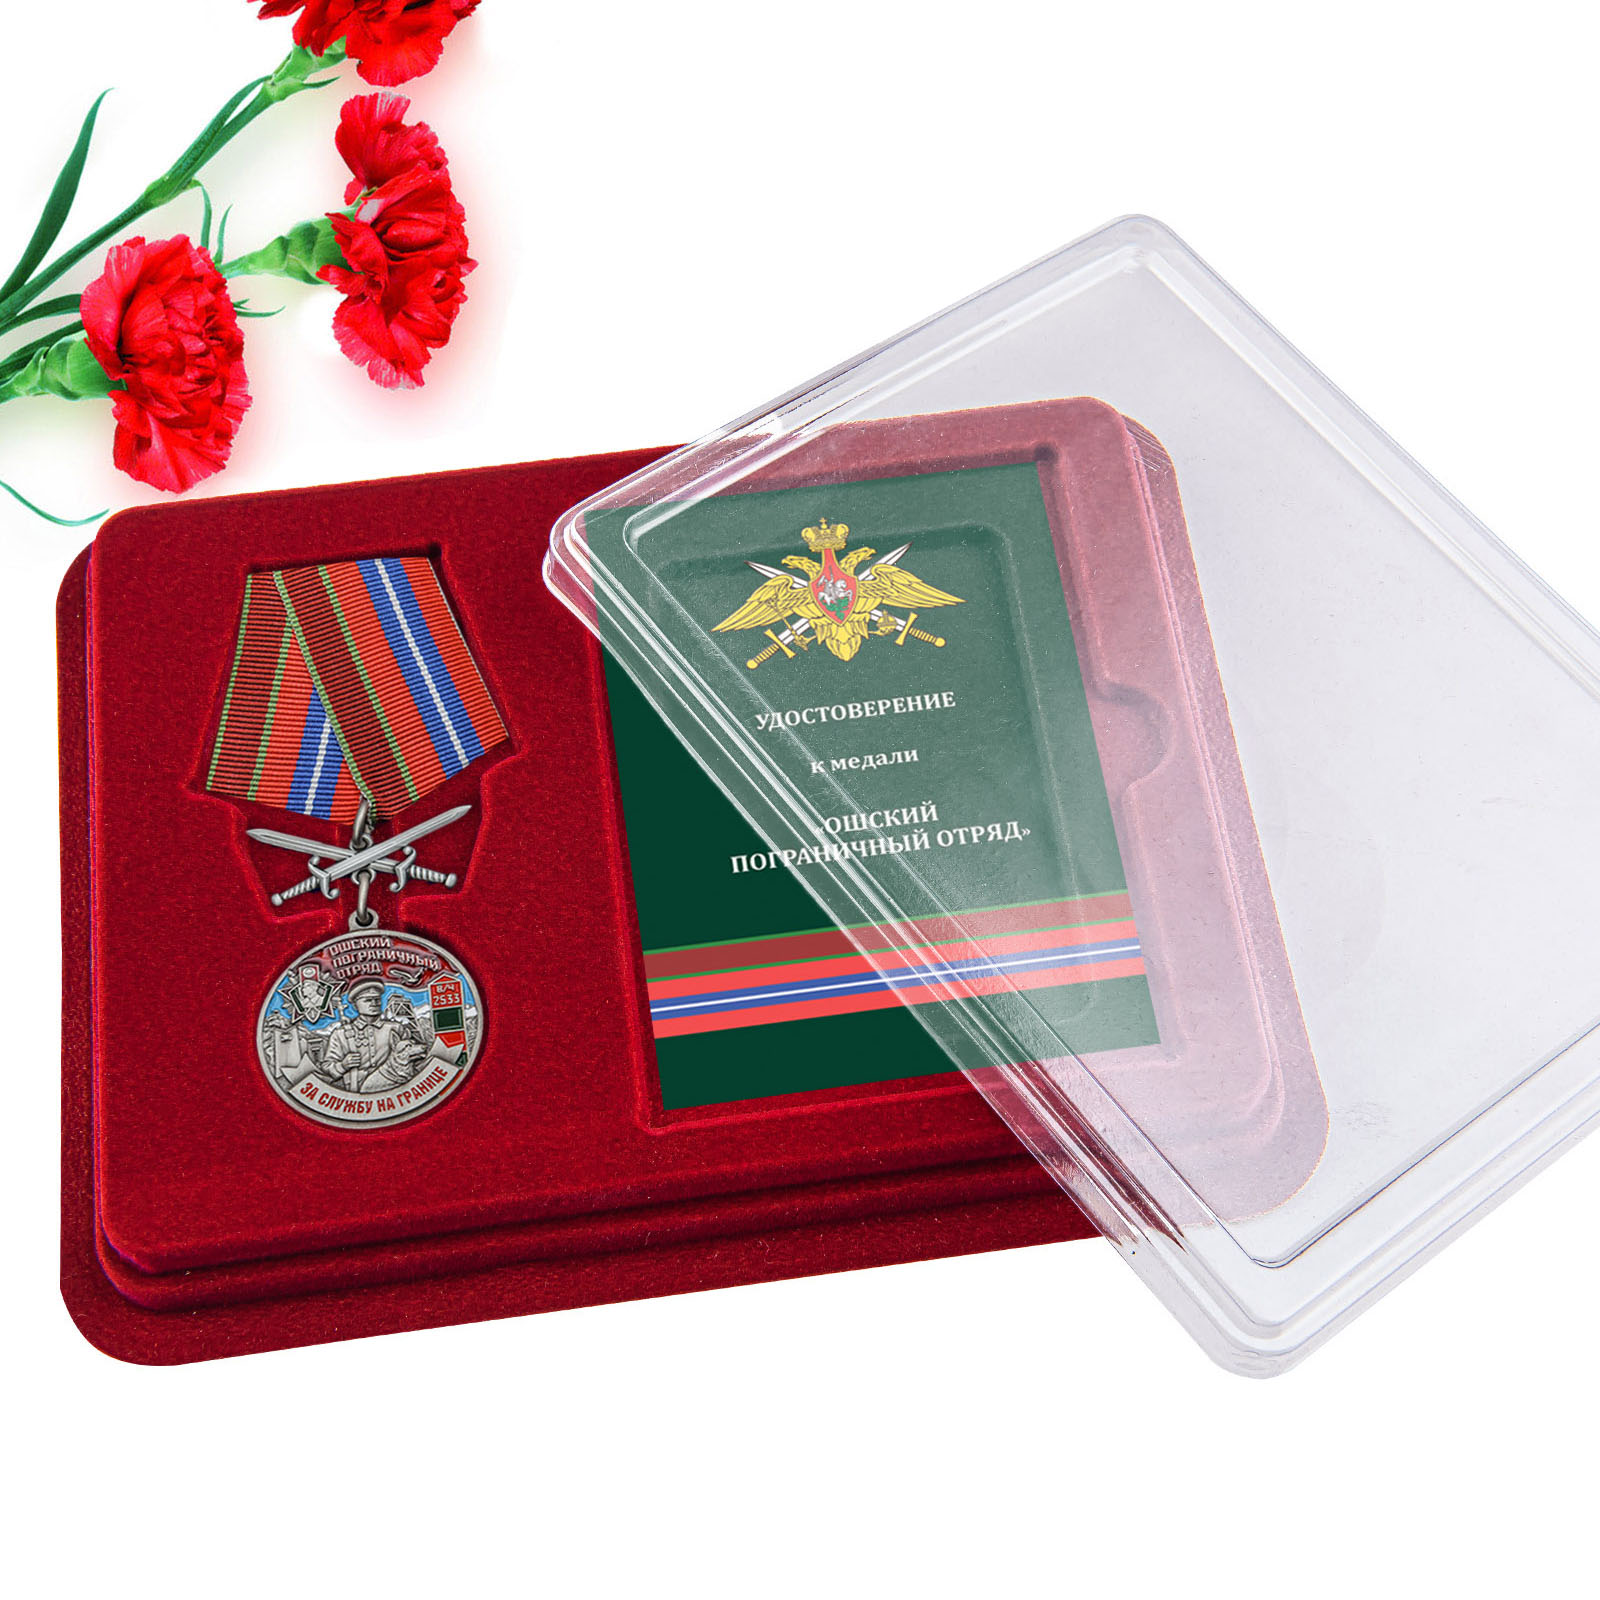 Купить медаль За службу в Ошском пограничном отряде по выгодной цене